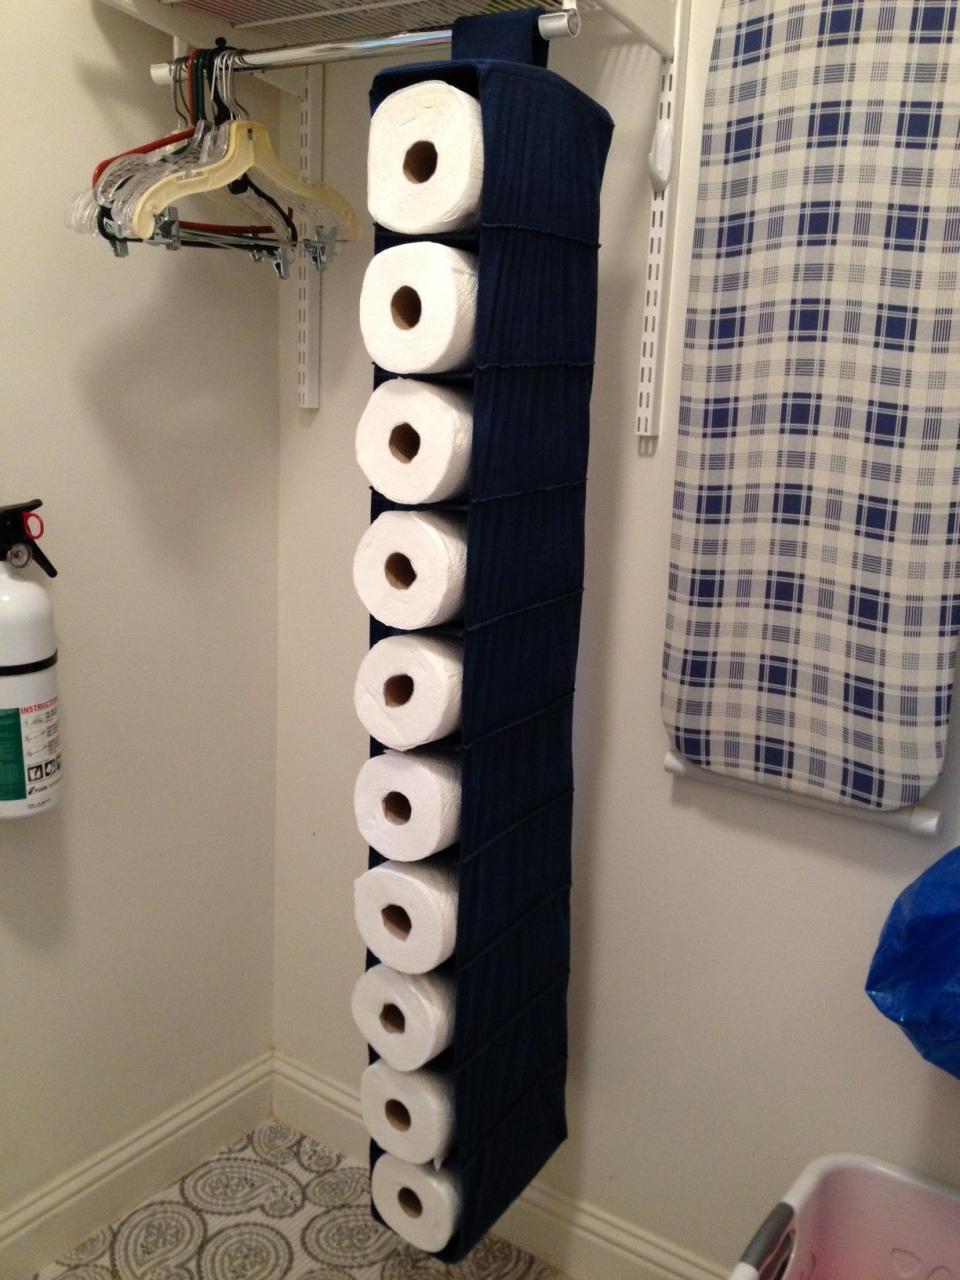 Paper towel storage. Towel storage, Paper towel storage, Rustic